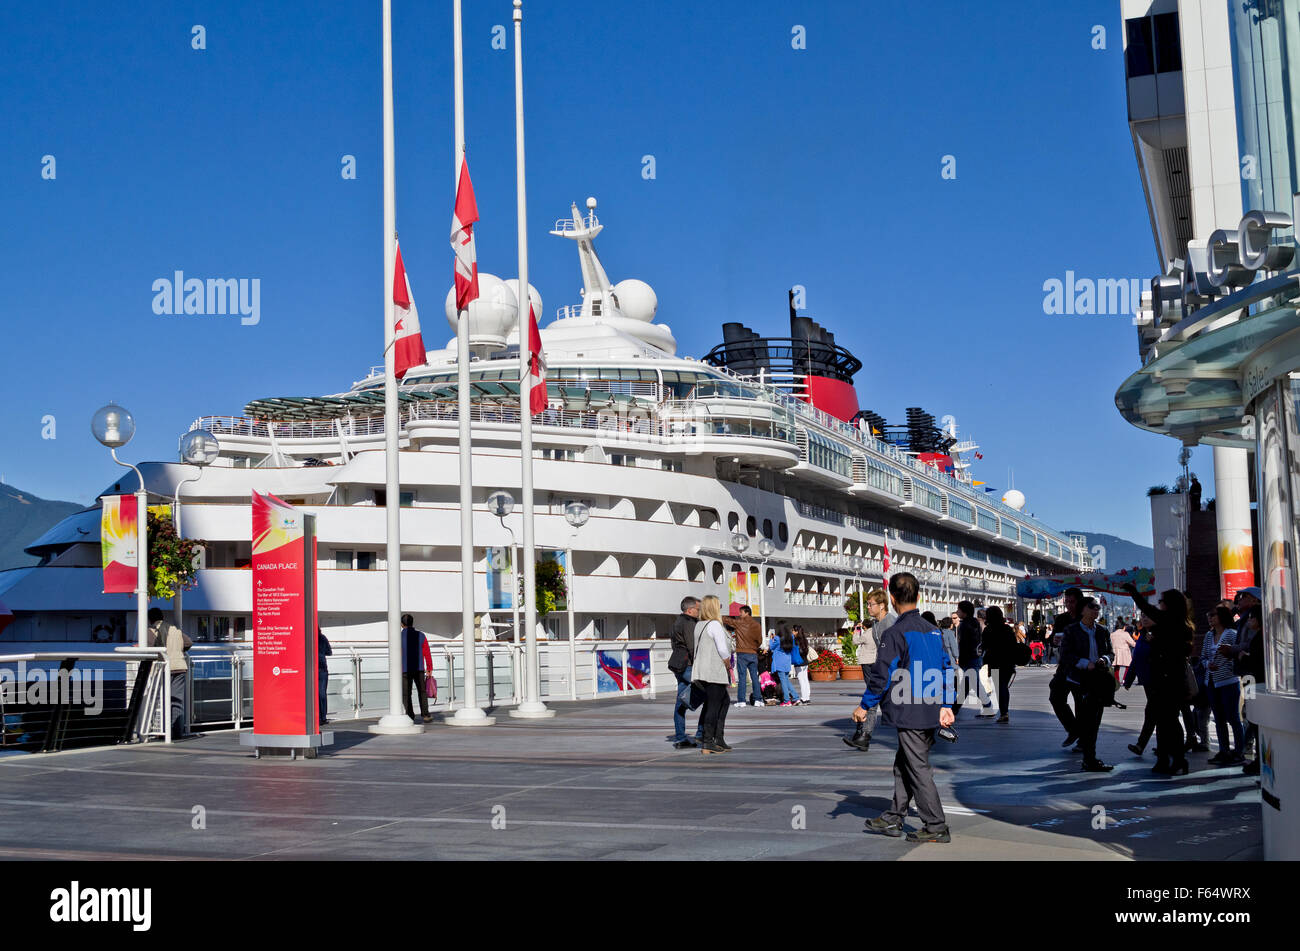 Disney Cruise nave ormeggiata al Canada Place di Vancouver, Canada. Foto Stock